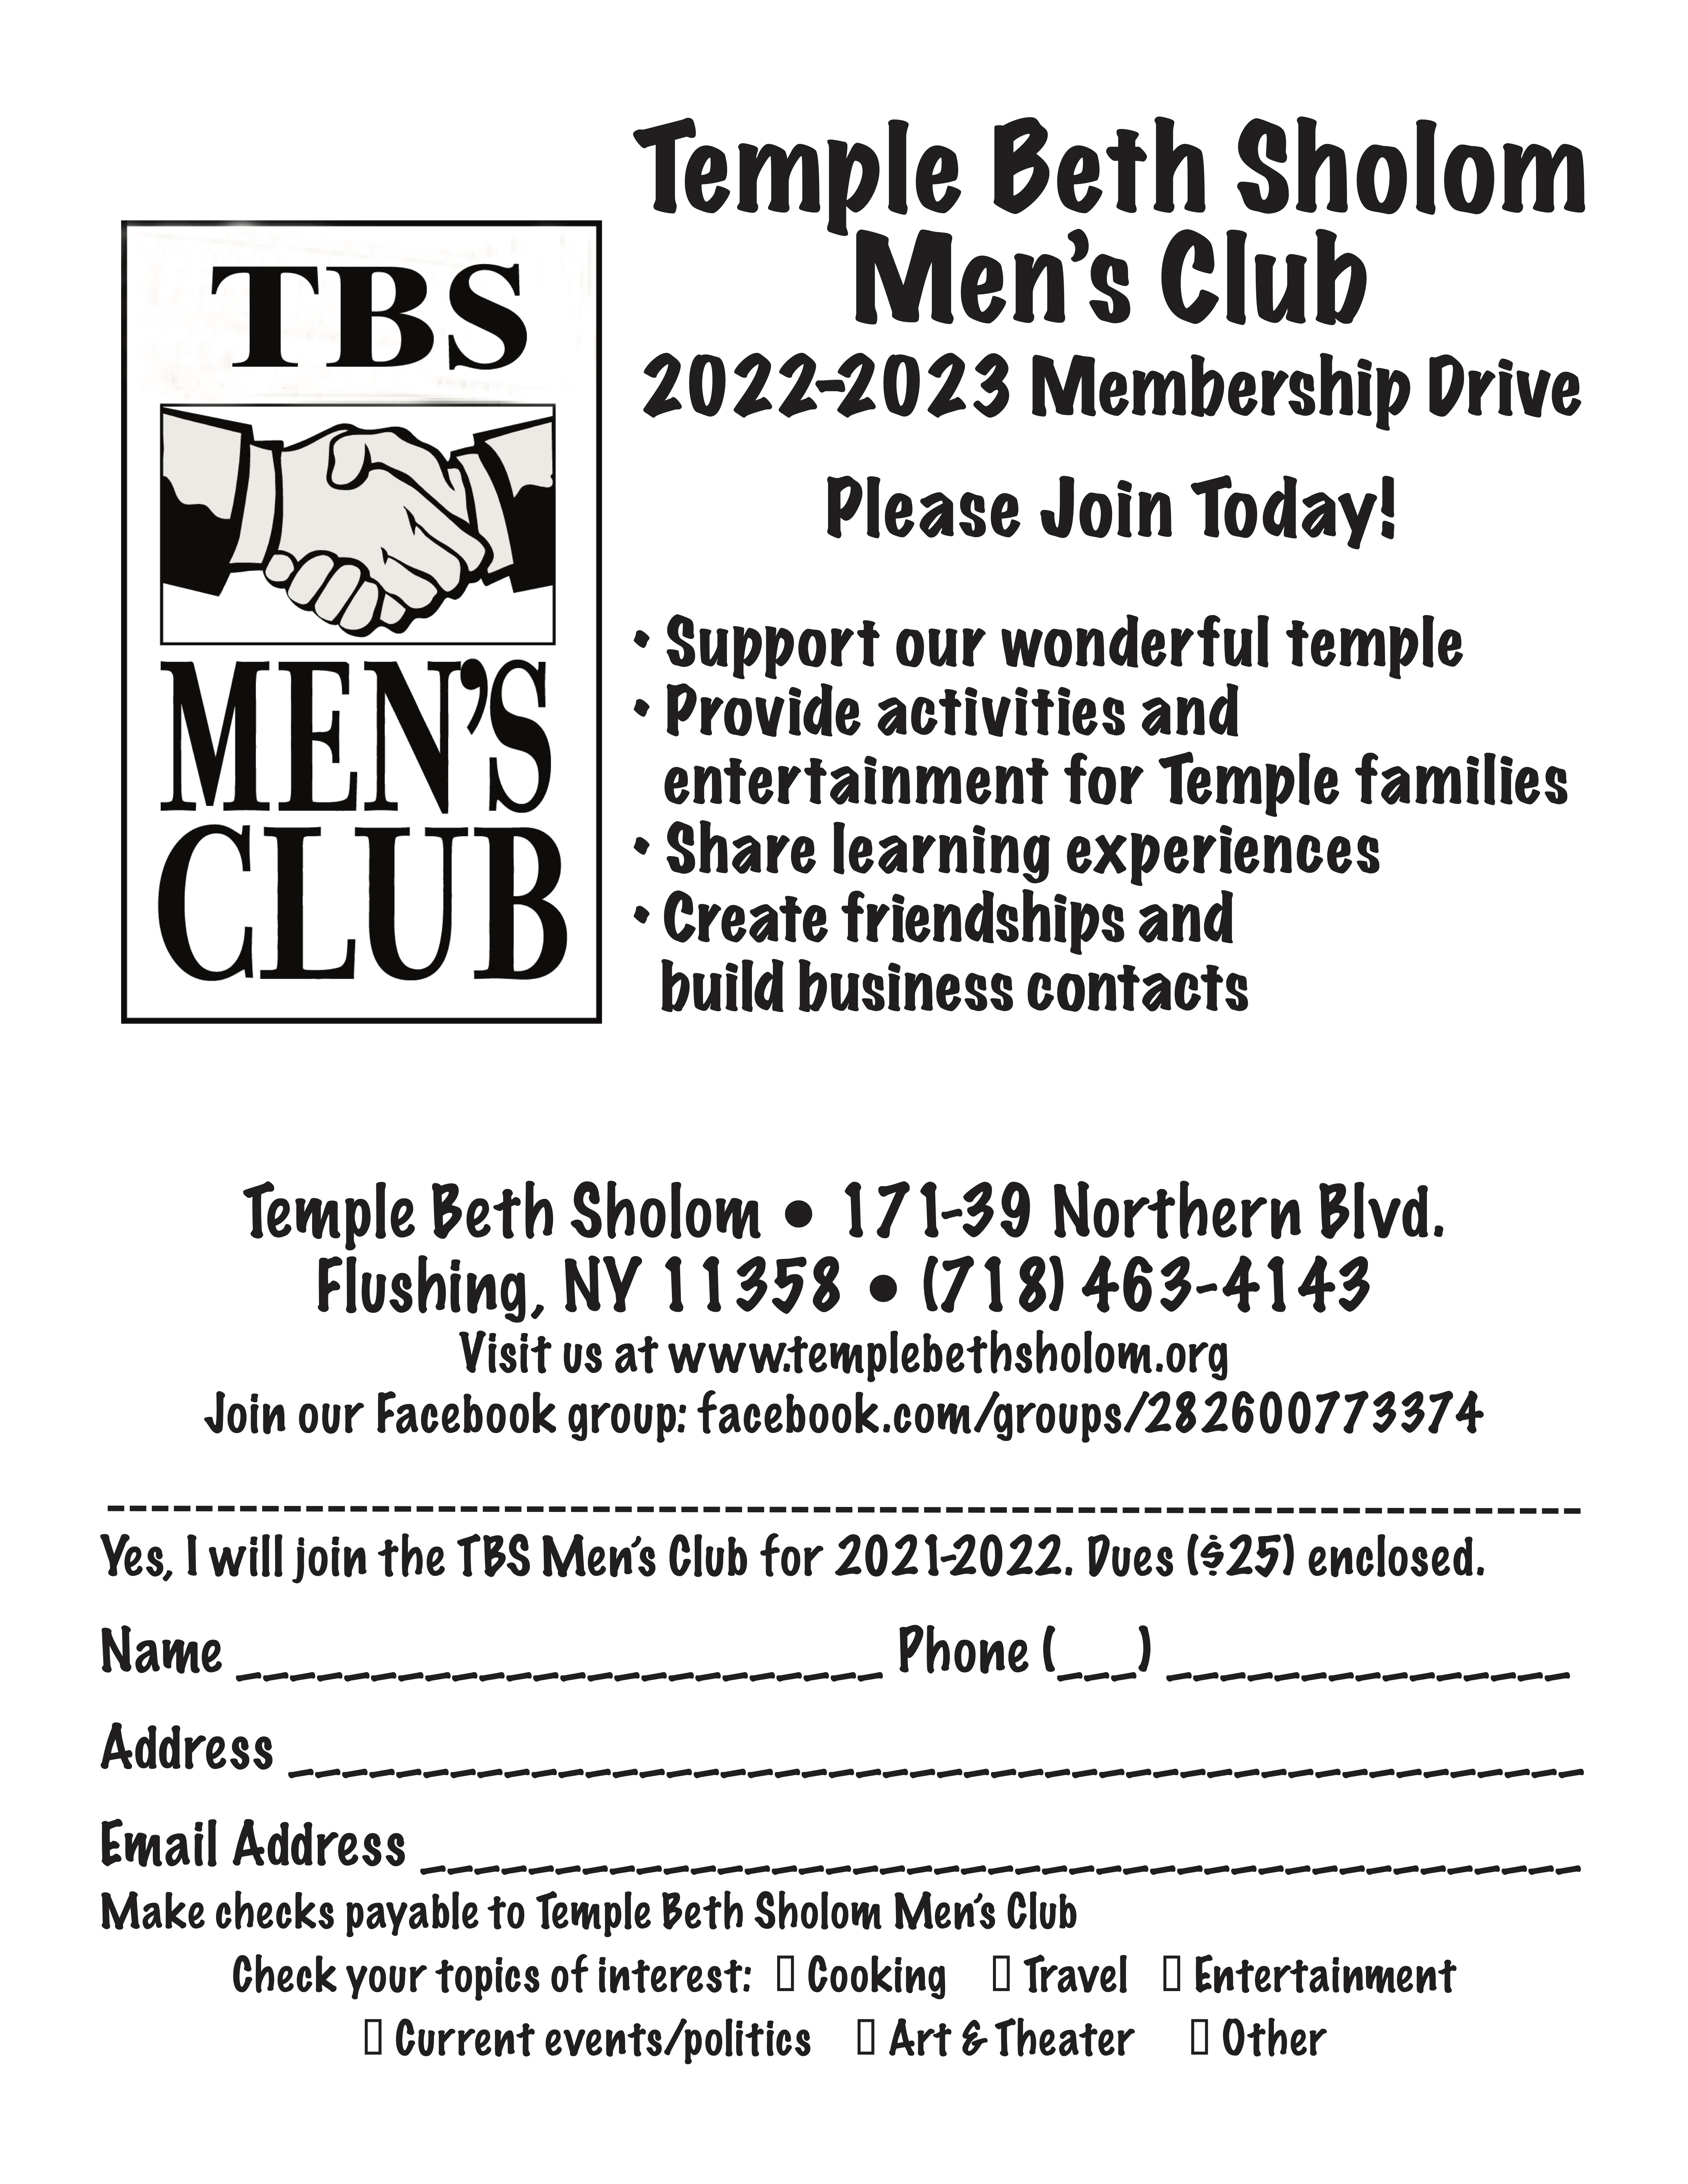 Men's Club Membership